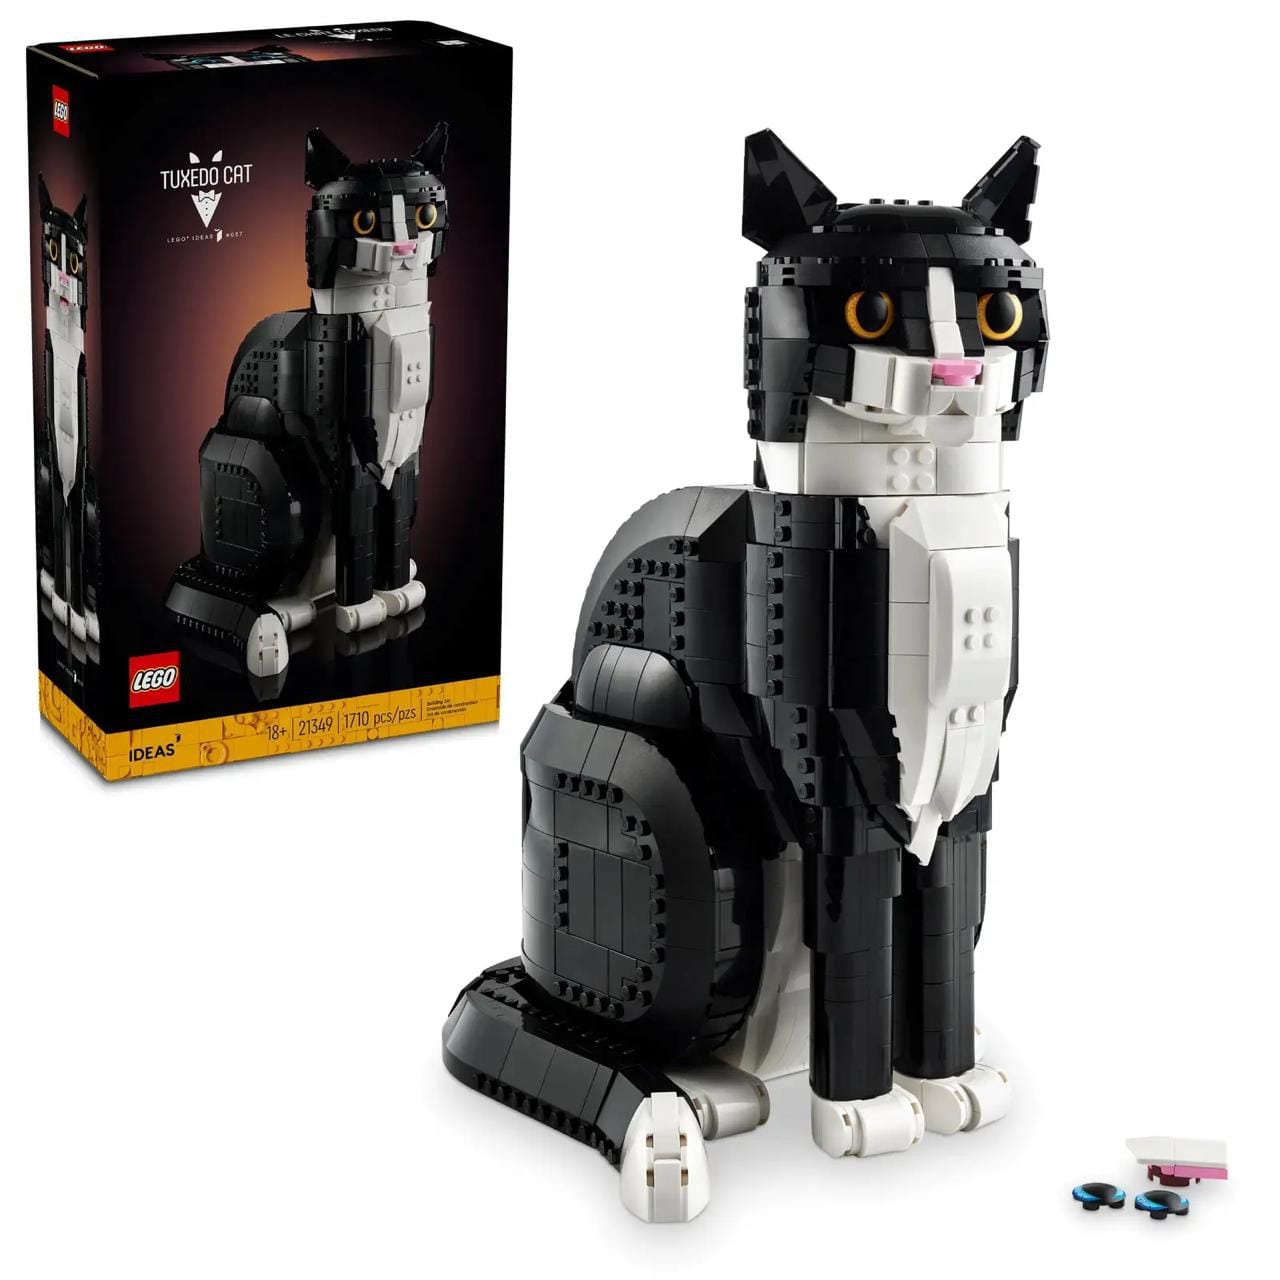 Este es el precio del Set de LEGO de gato tuxedo